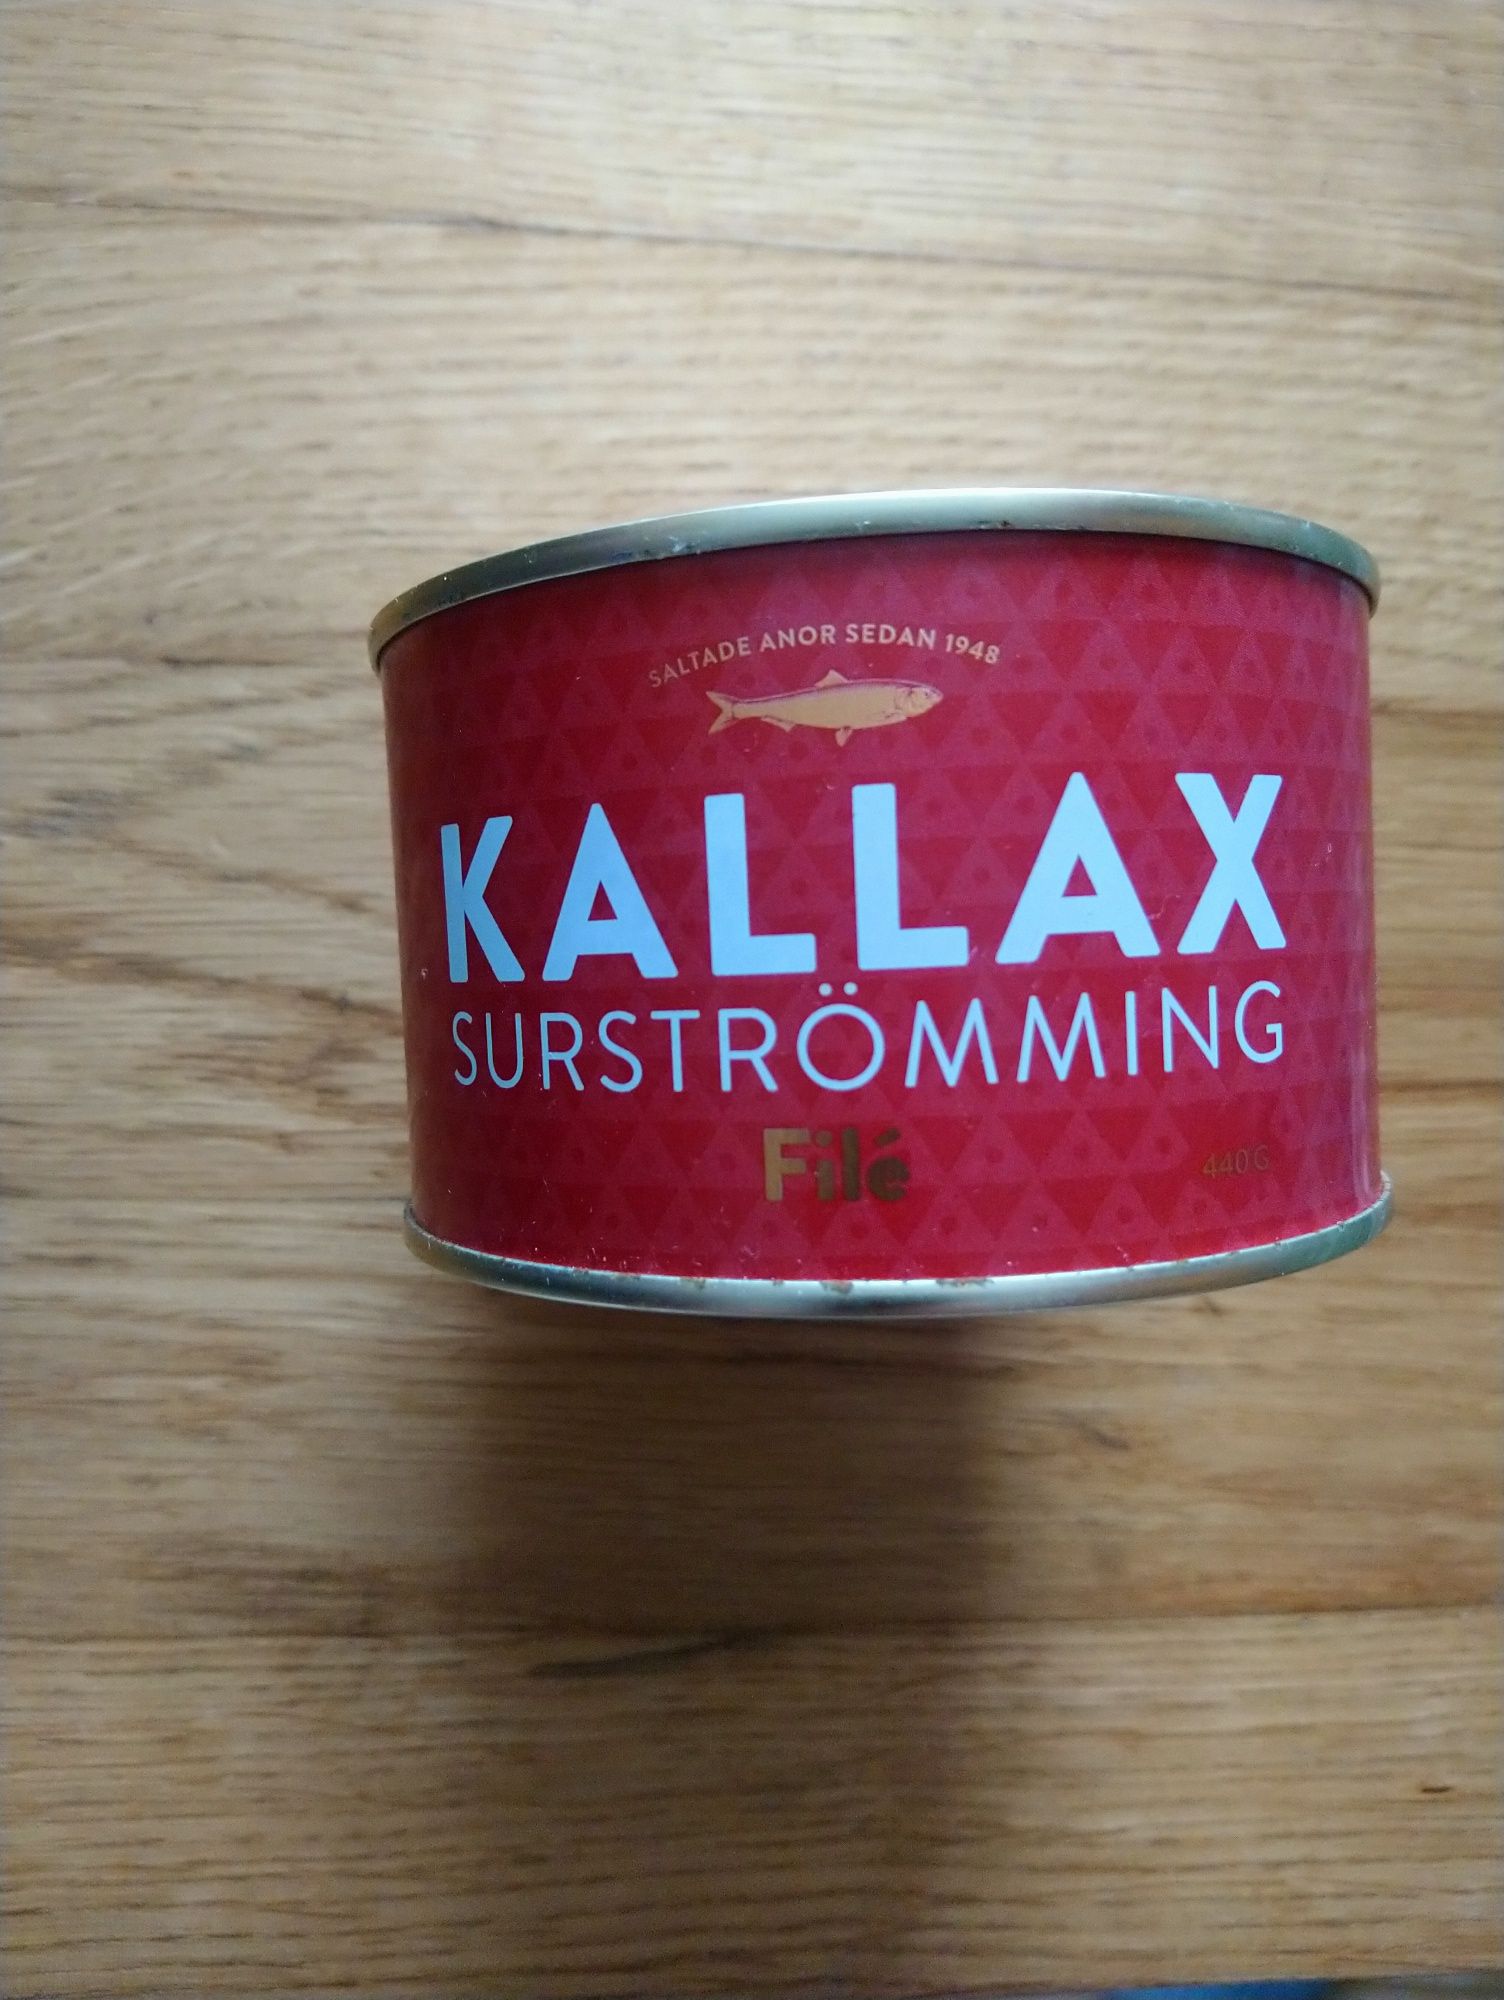 Surstromming Kallax 440 гр філе Швеція консерва сюрстреммінг рибна